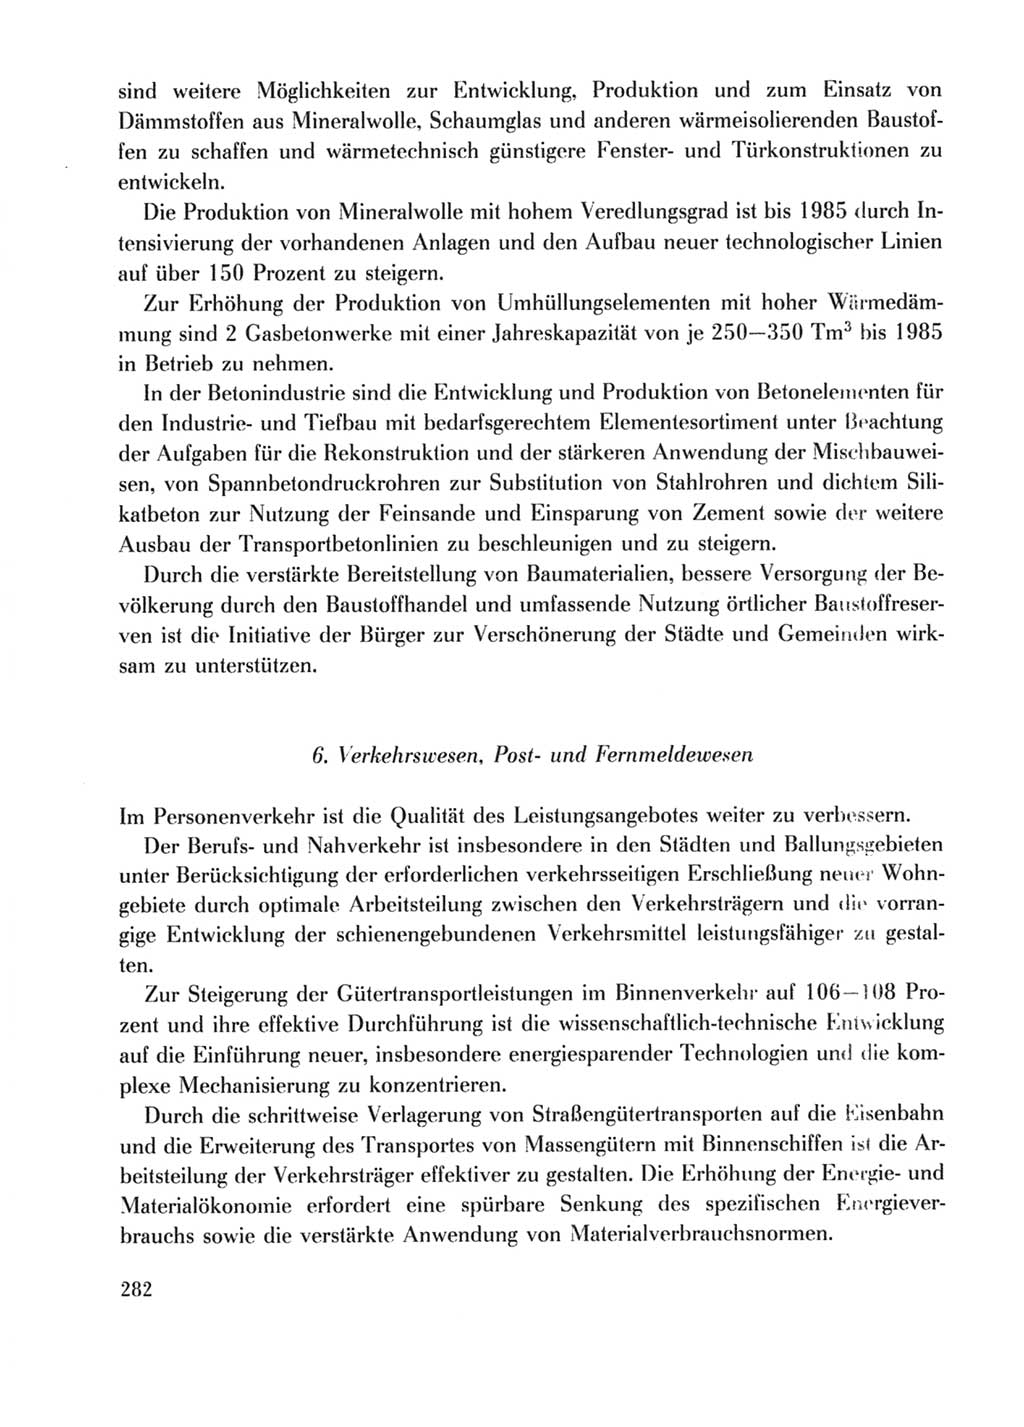 Protokoll der Verhandlungen des Ⅹ. Parteitages der Sozialistischen Einheitspartei Deutschlands (SED) [Deutsche Demokratische Republik (DDR)] 1981, Band 2, Seite 282 (Prot. Verh. Ⅹ. PT SED DDR 1981, Bd. 2, S. 282)